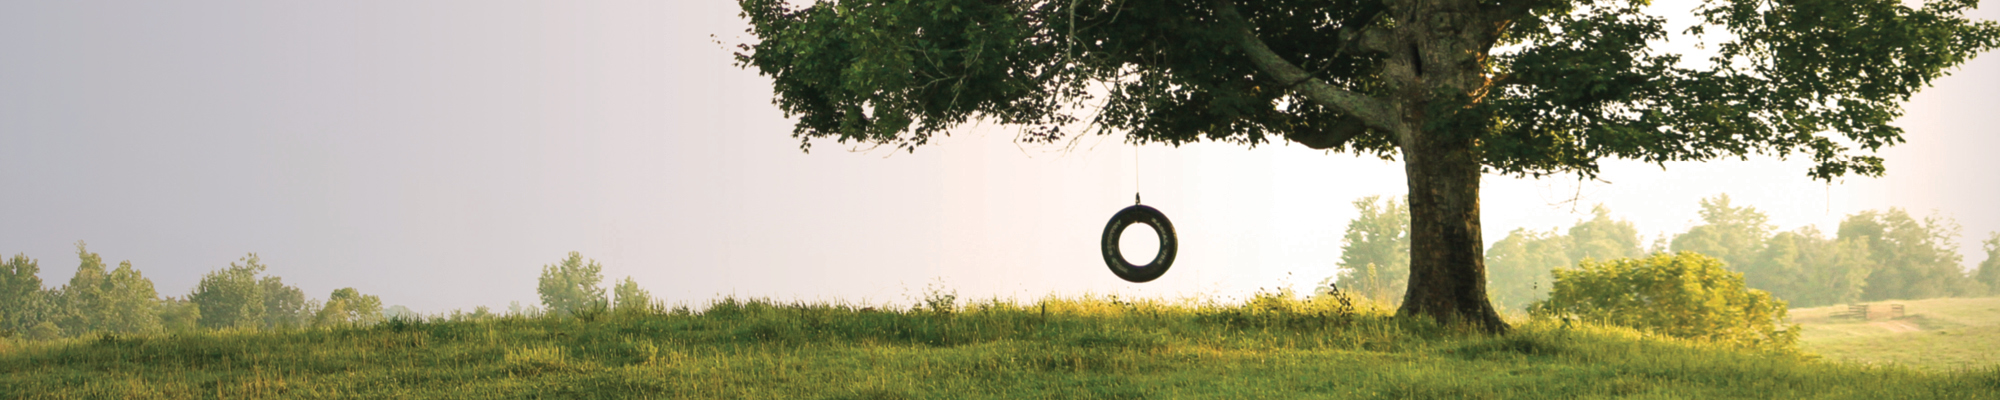 Empty tire swing in a large tree in a field